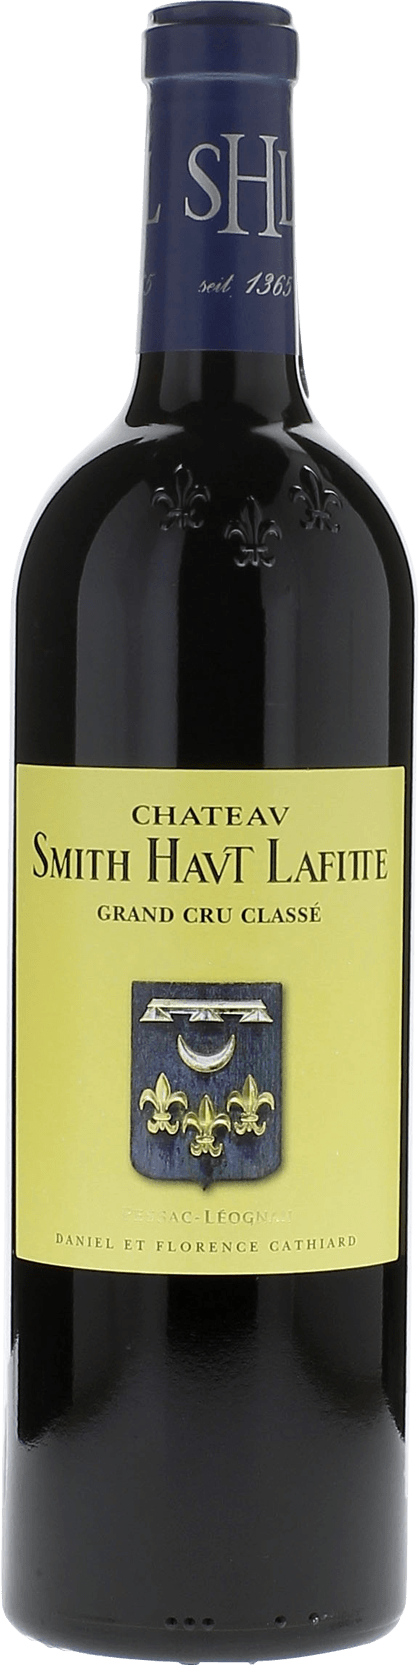 Smith haut lafitte 2009 Grand Cru Class Graves, Bordeaux rouge